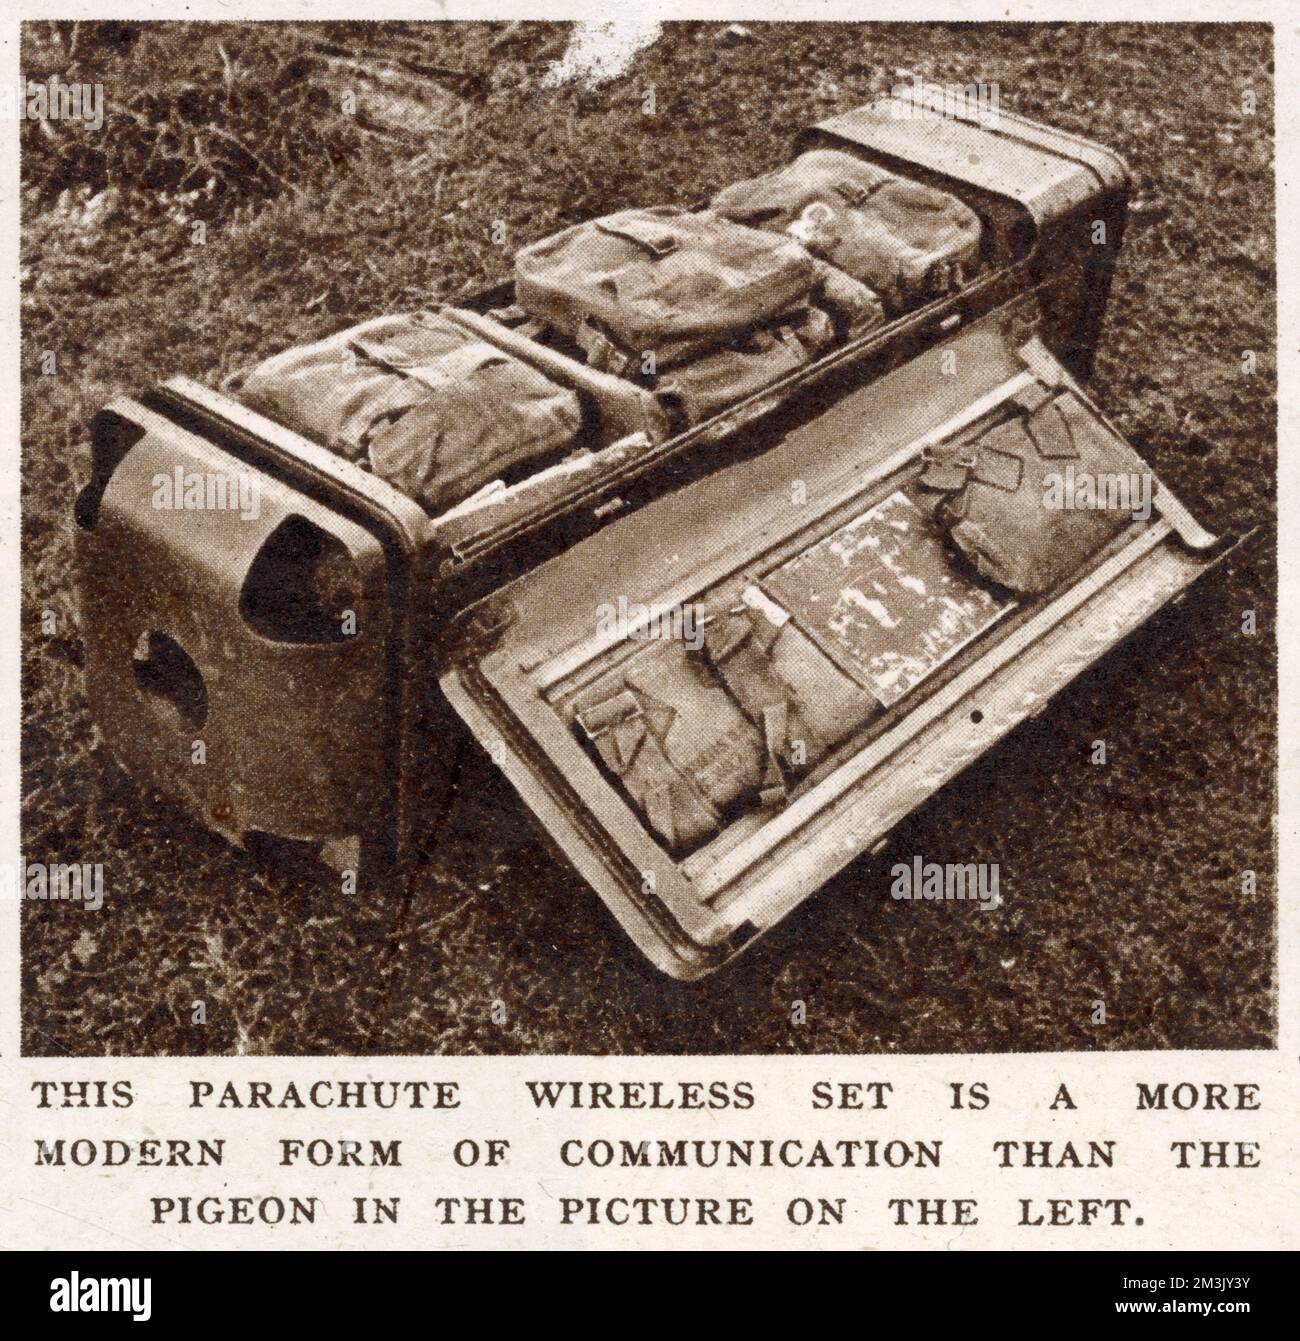 Un ensemble radio de type numéro 56, emballé dans son conteneur de parachute, utilisé par les Forces aéroportées britanniques, 1944. Ce type d'équipement a été utilisé dans l'opération 'Market Garden', par la British First Airborne Division, à Arnhem, en Hollande. Banque D'Images